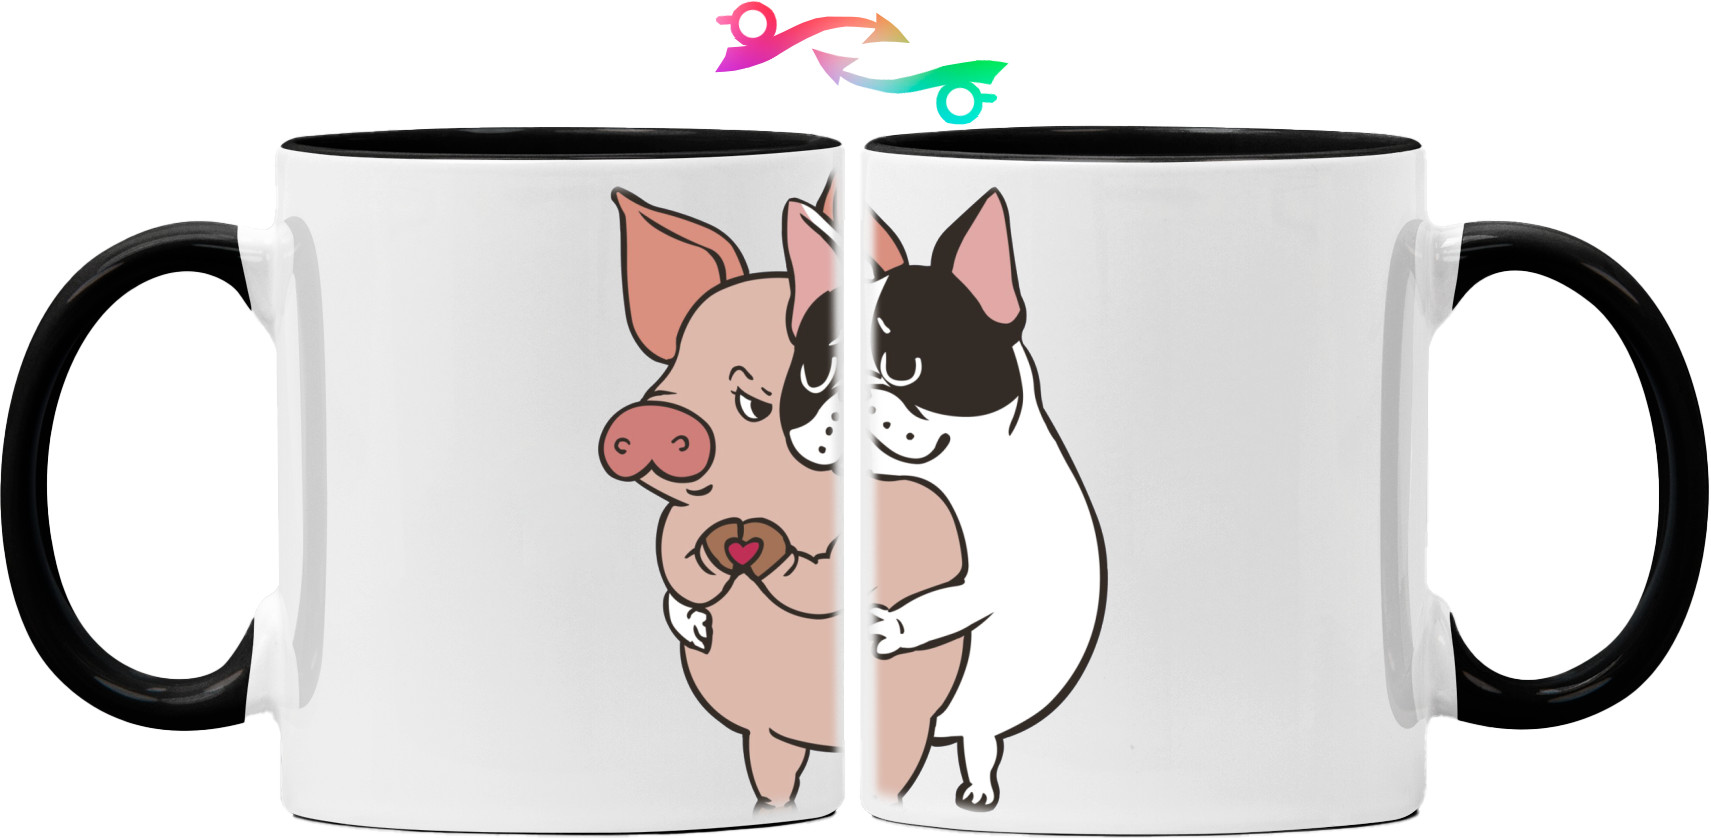 Закохані свинка та собачка обіймаються із серцем